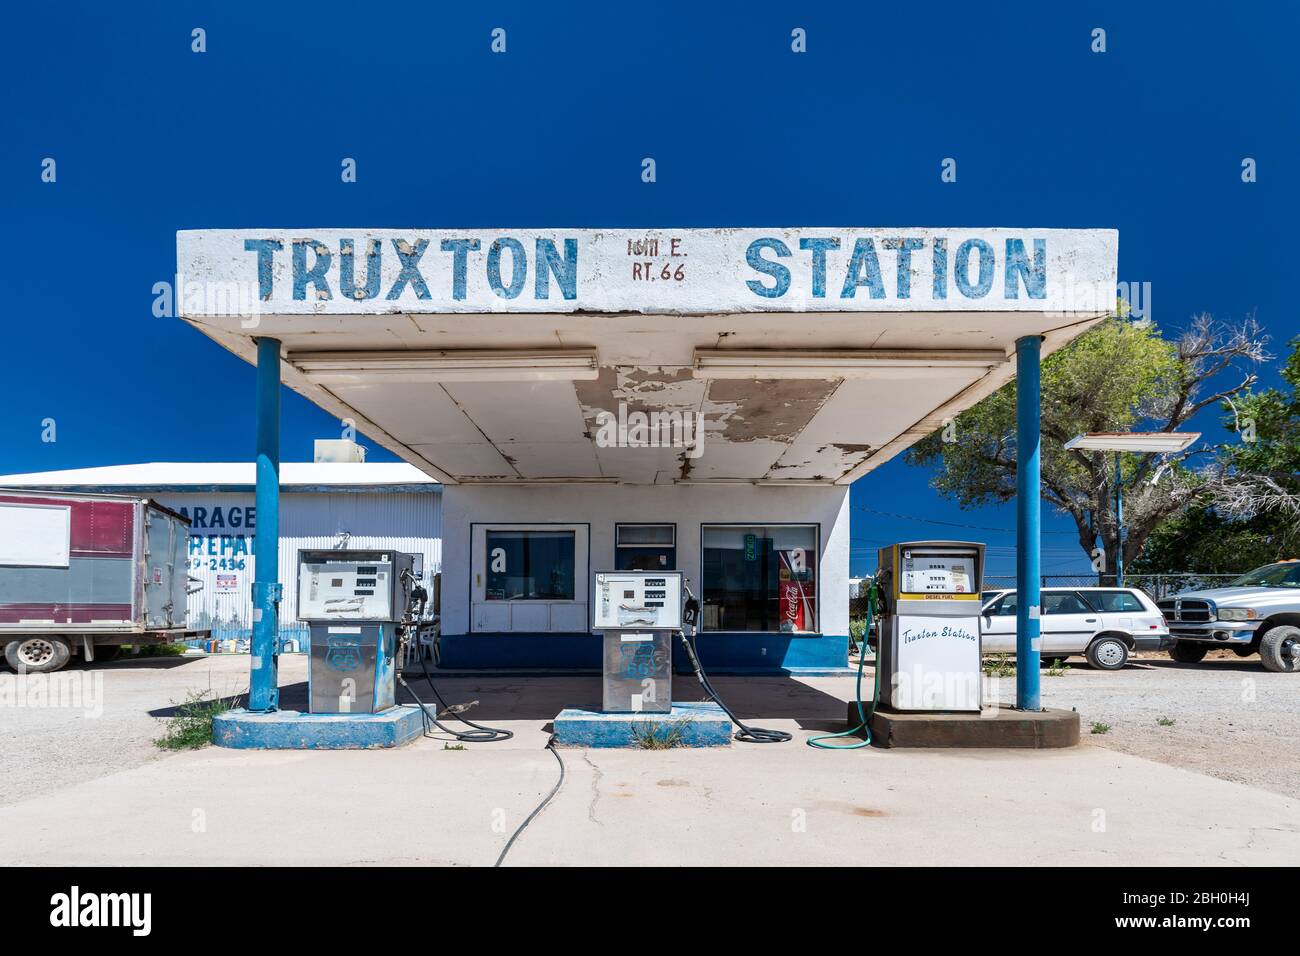 Immagine grandangolare simmetrica di un'iconica stazione di rifornimento vintage a Seligman, Arizona, sotto un cielo blu estivo Foto Stock